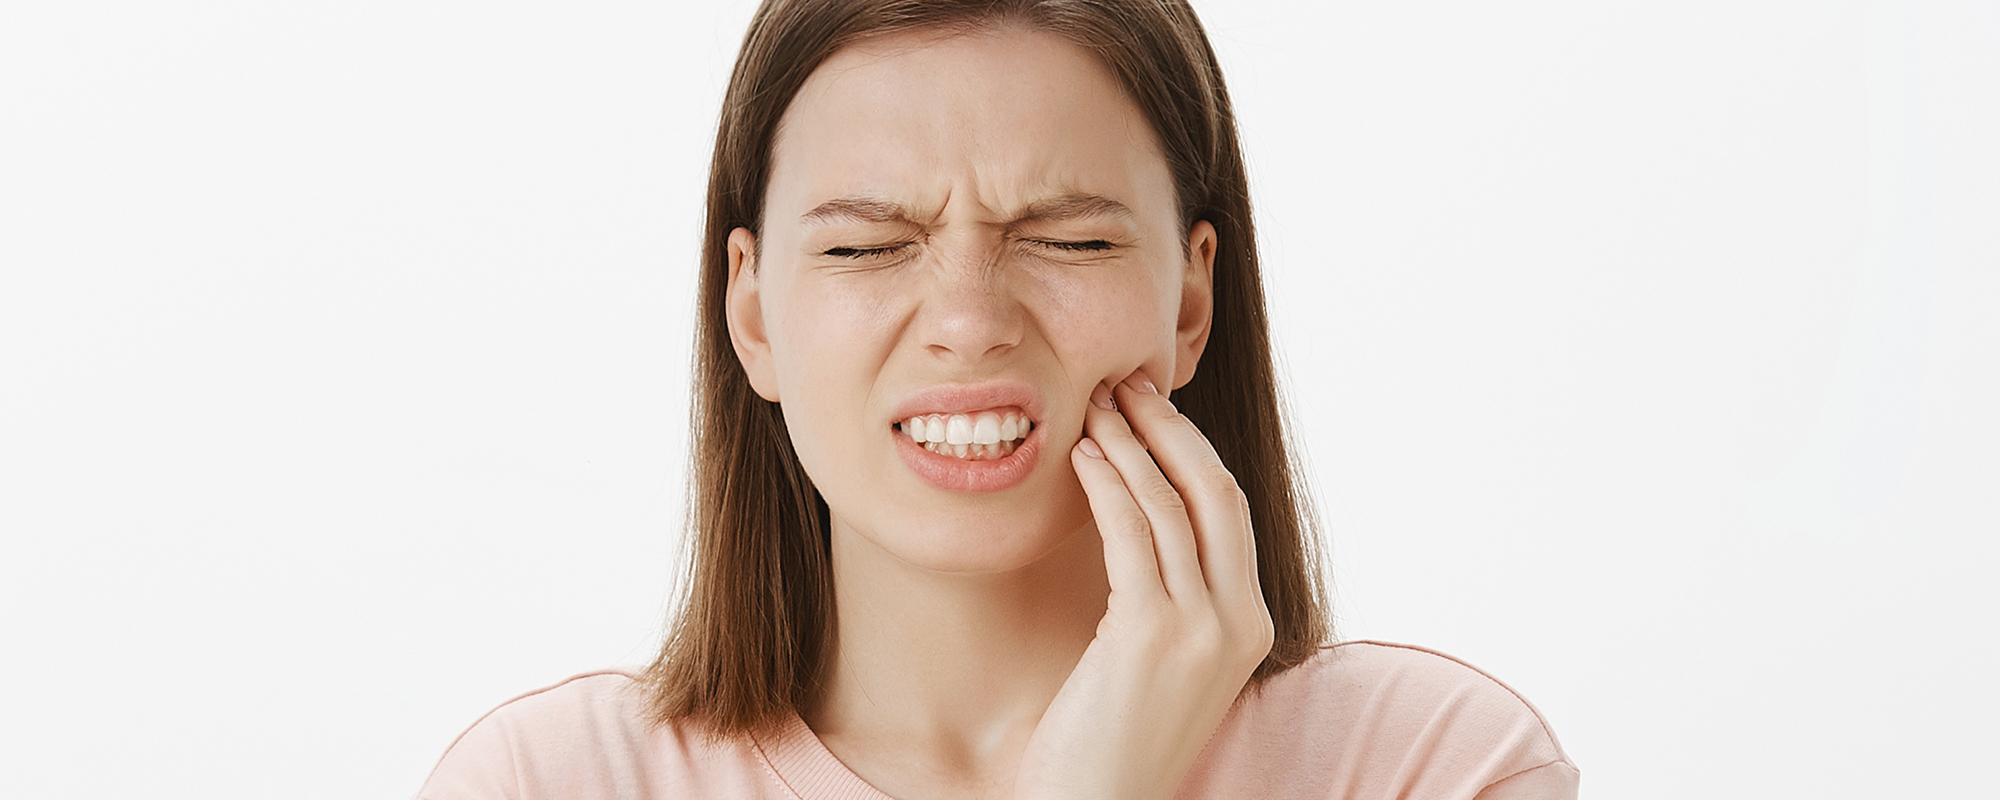 Dolor en ortodoncia: Una revisión a la literatura.